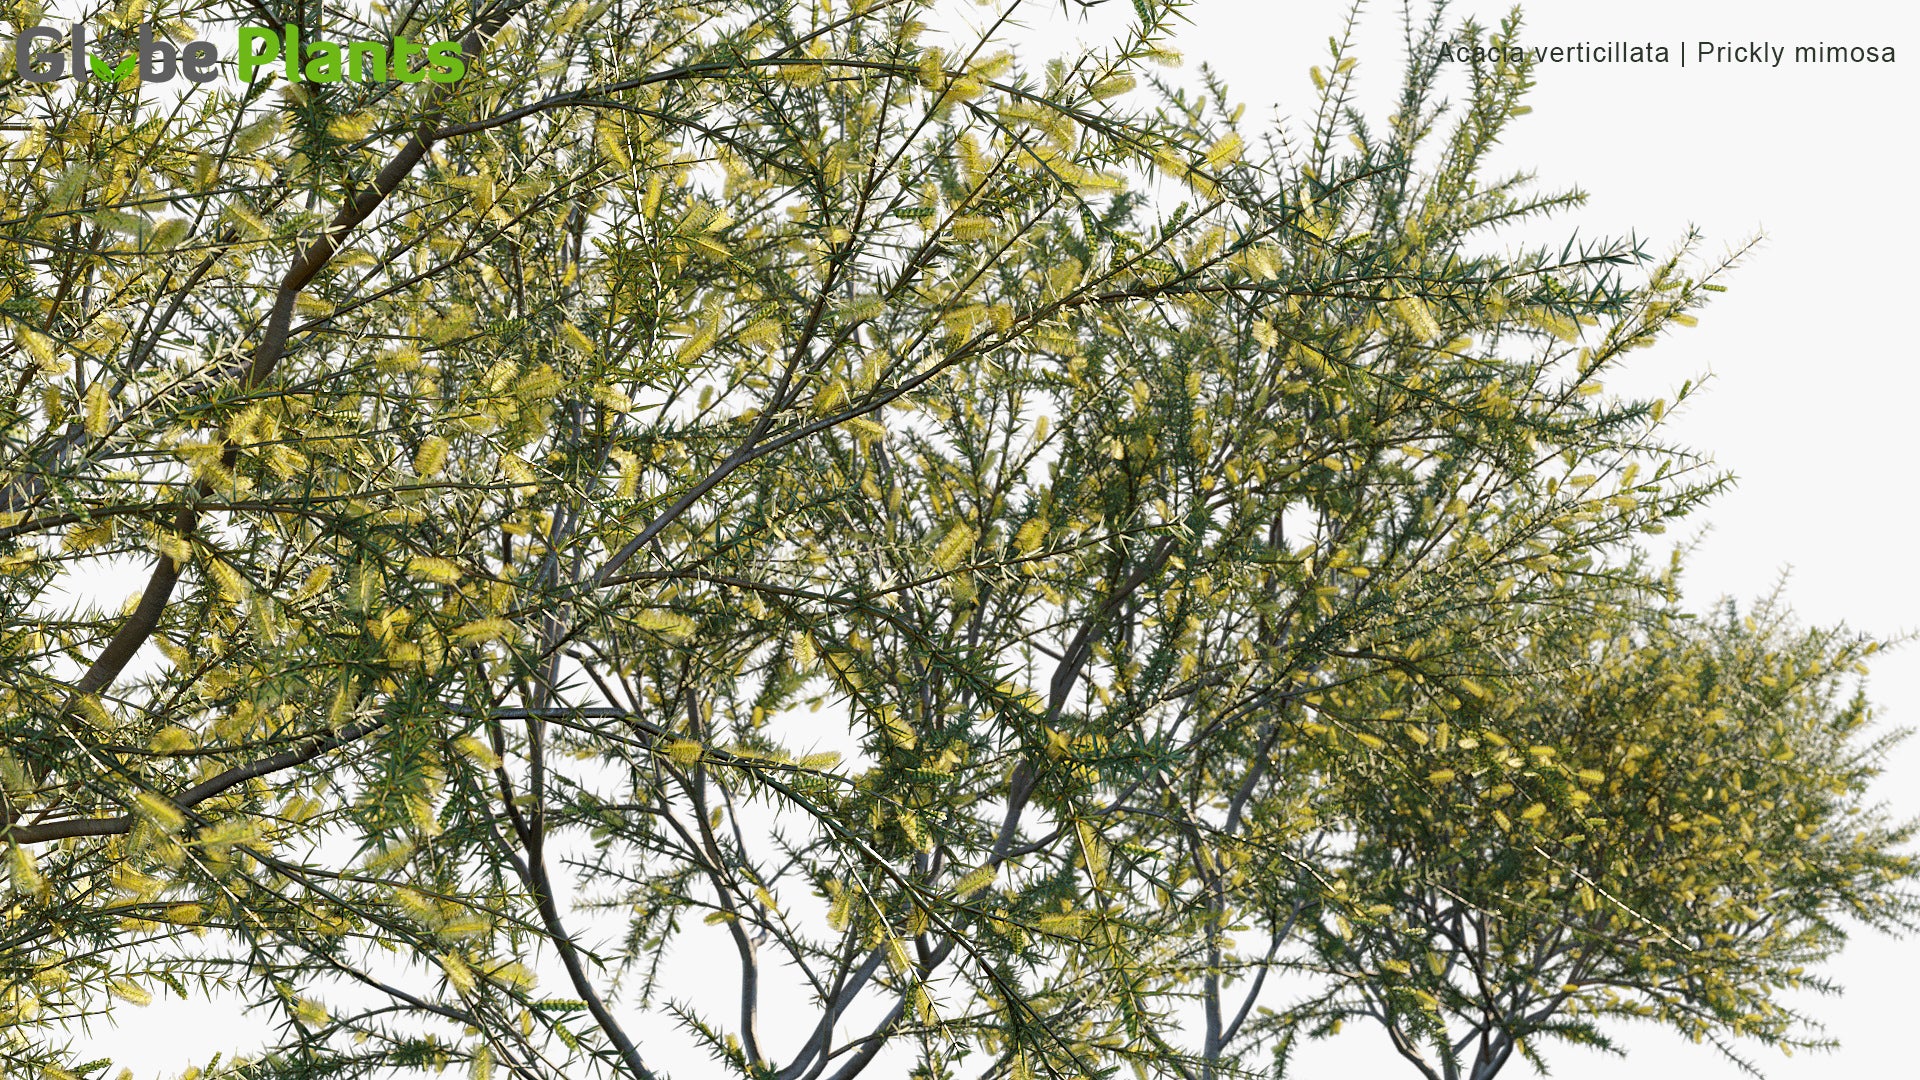 Acacia Verticillata 3D Model